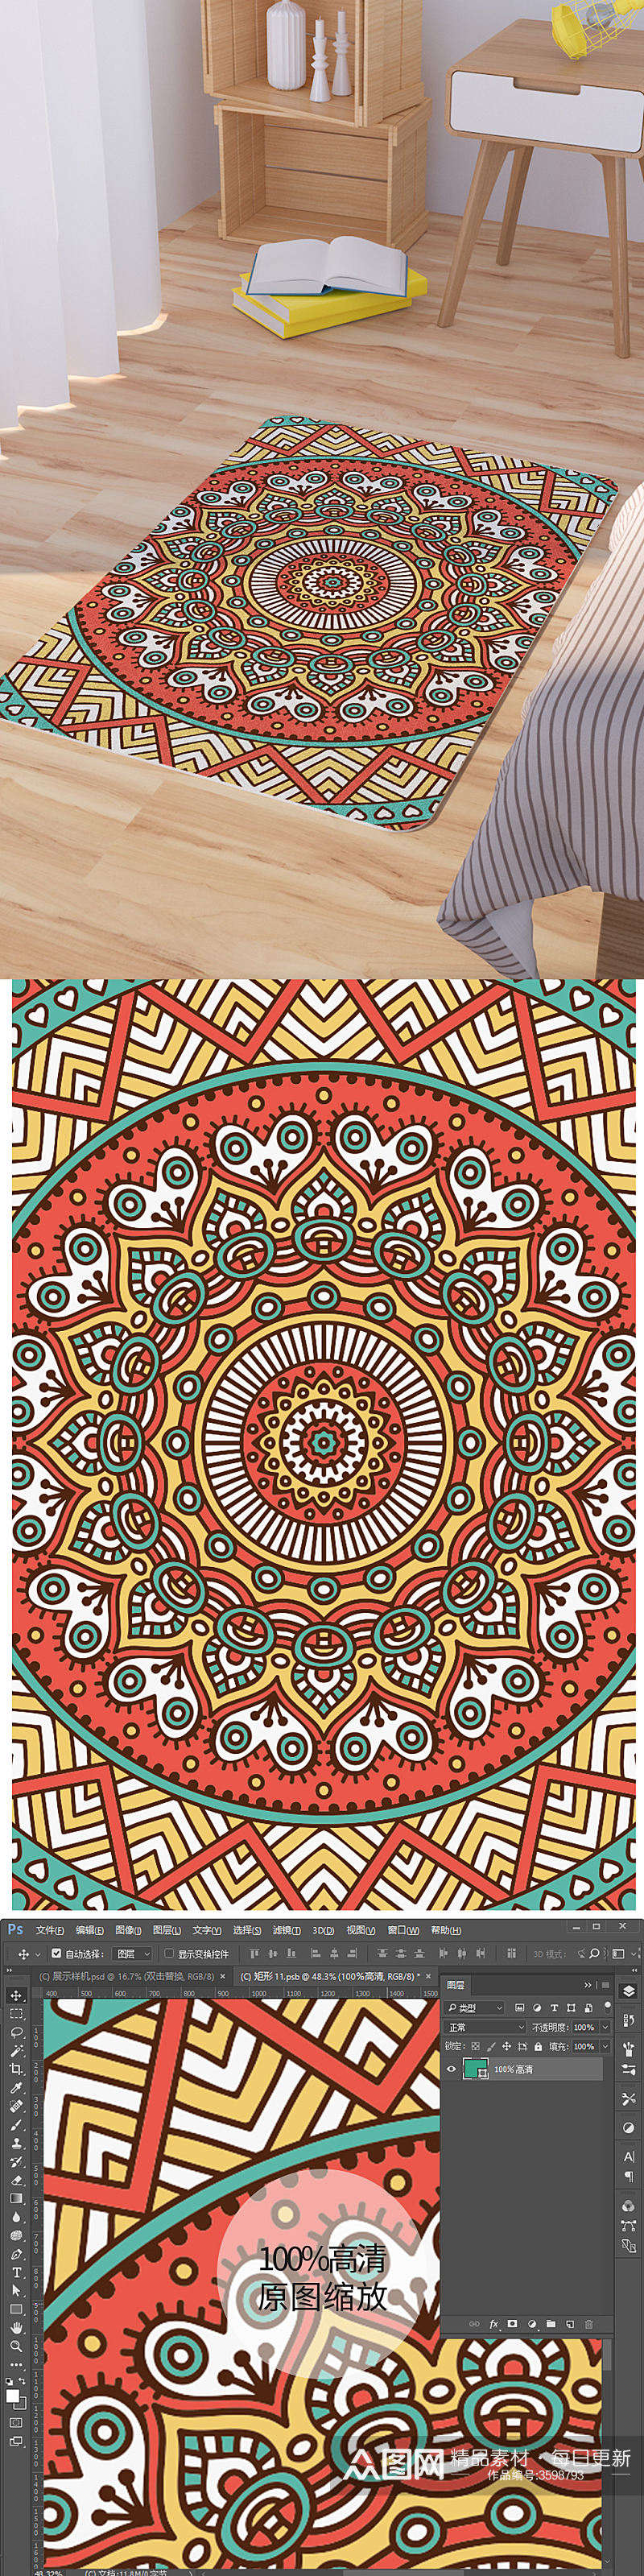 矢量手绘民族风曼陀罗花纹脚垫地毯图案素材